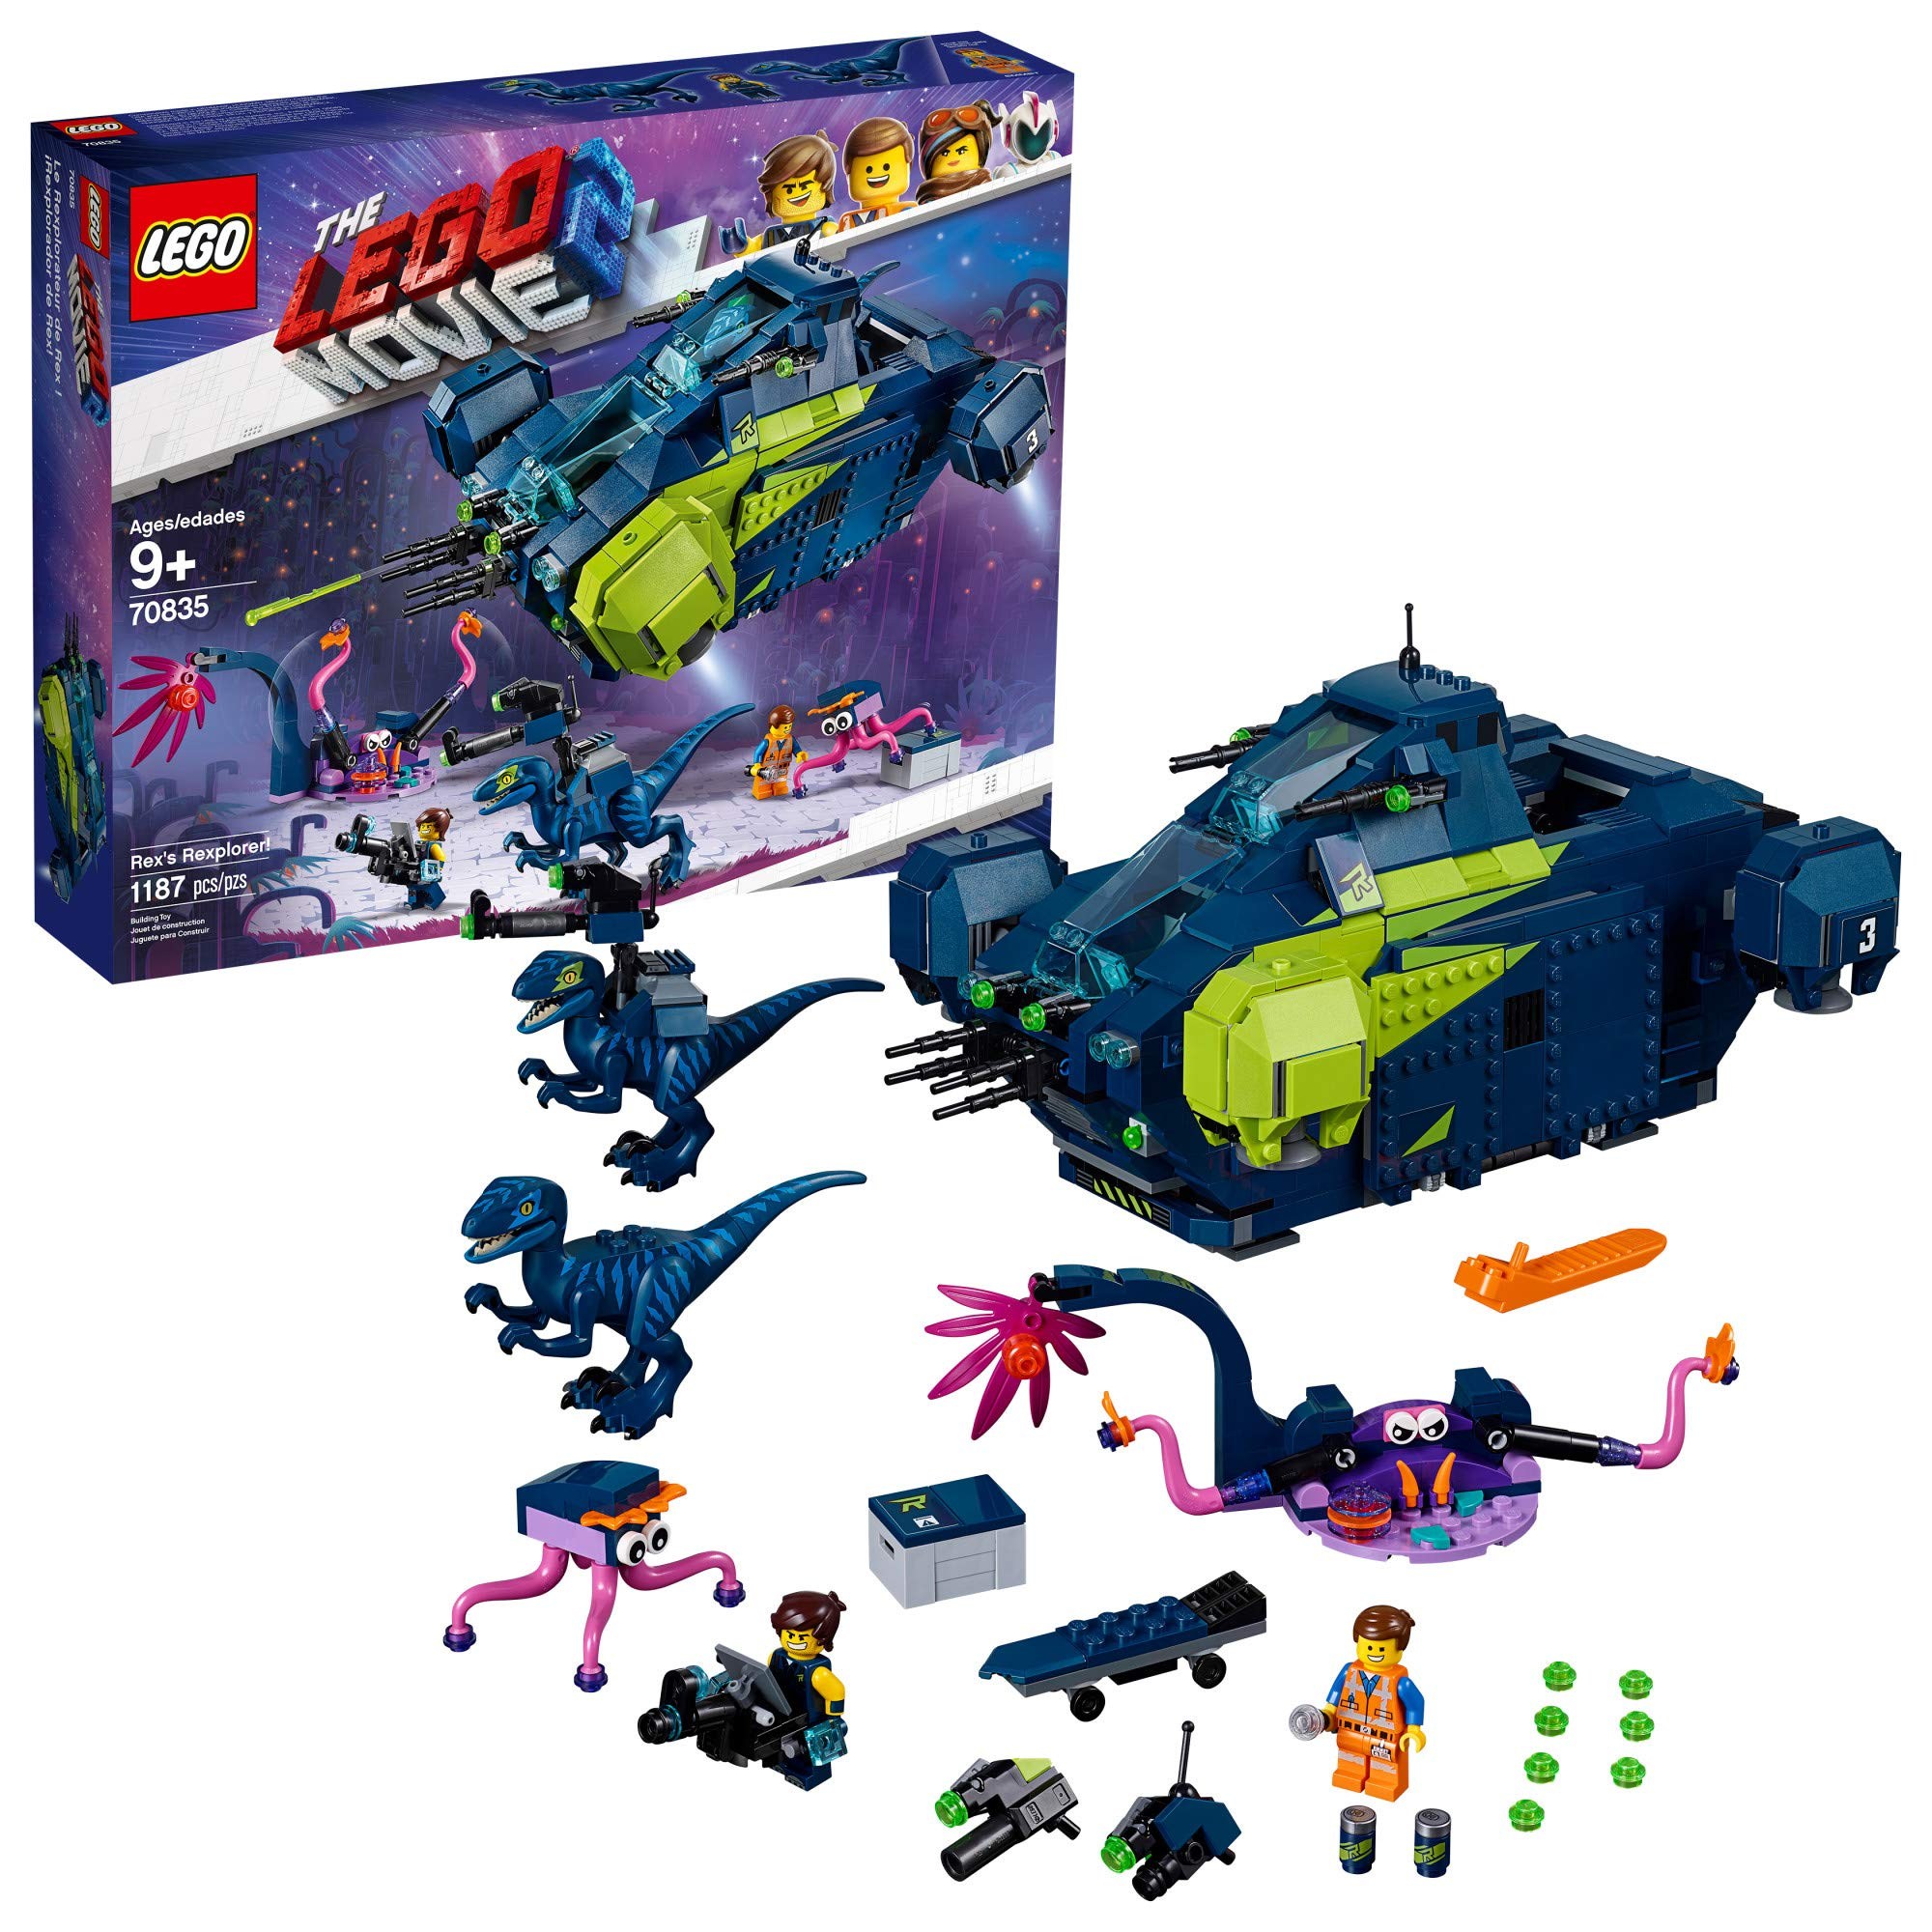 LEGO THE LEGO MOVIE 2 Rex’s Rexplorer 70835 Building Kit Spaceship Toy wit, 본품선택 